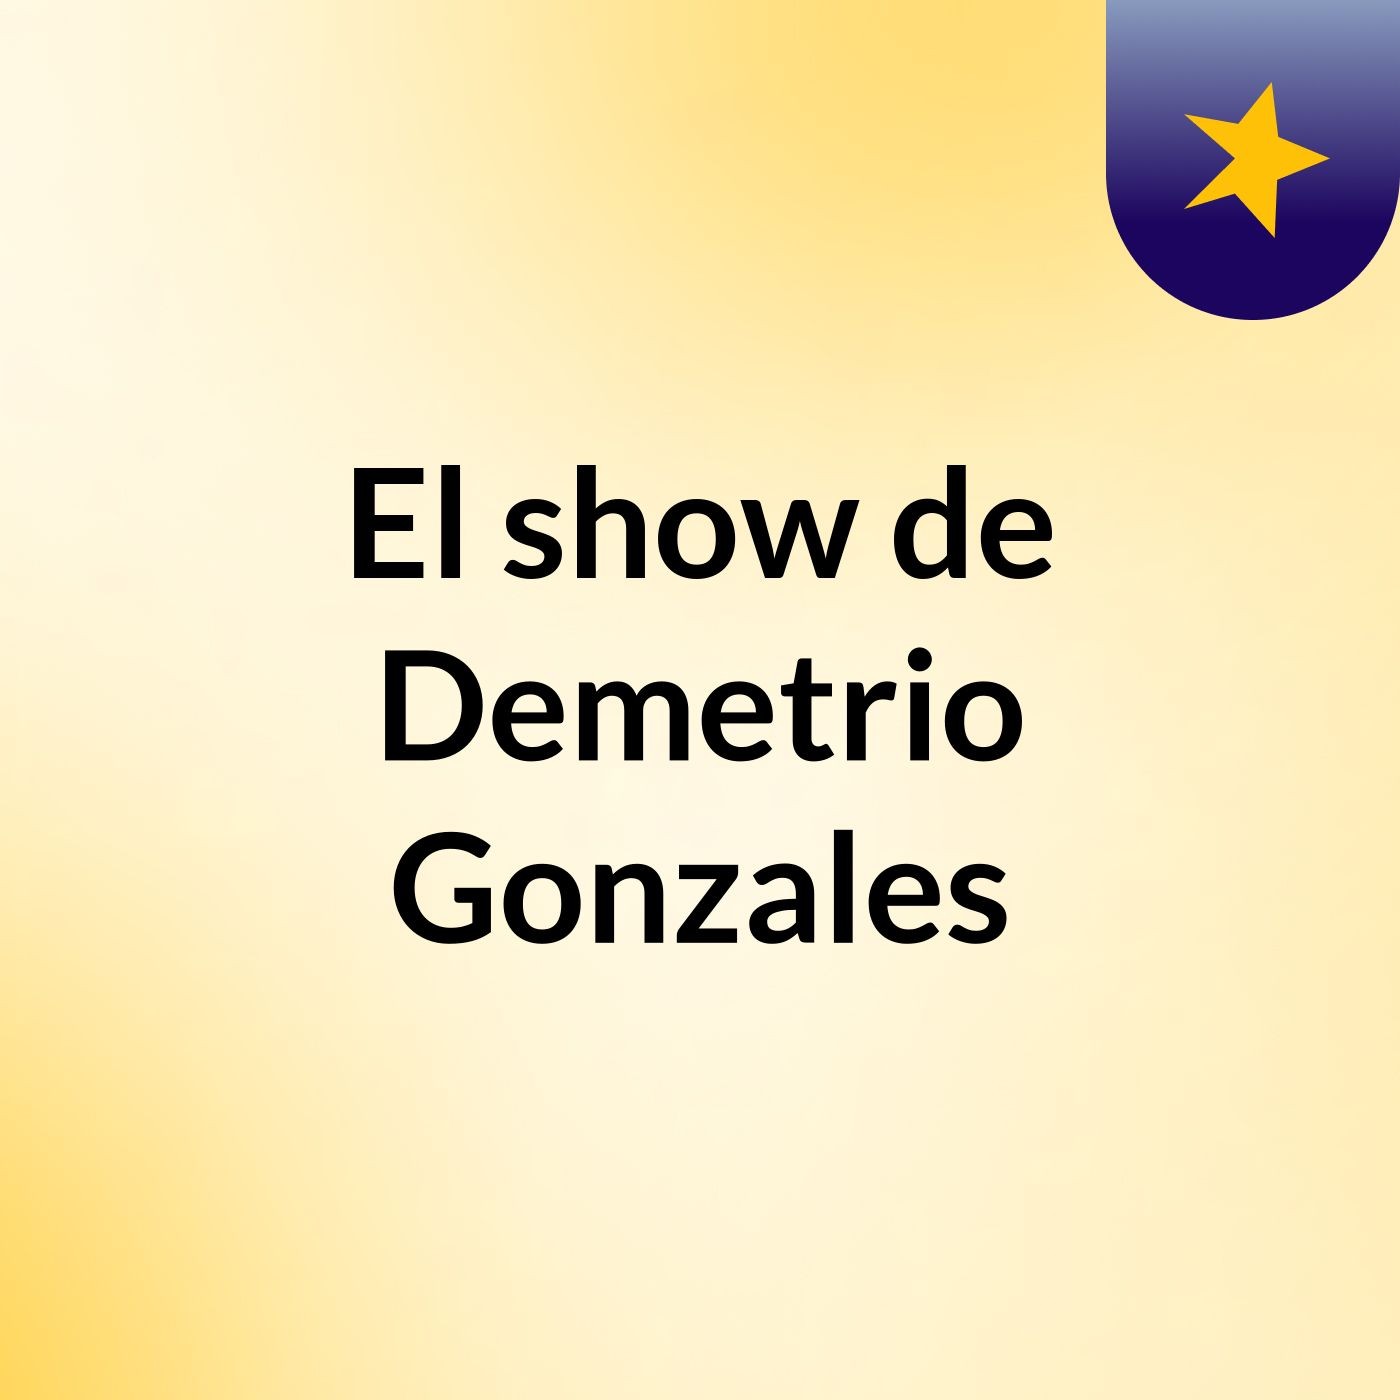 El show de Demetrio Gonzales